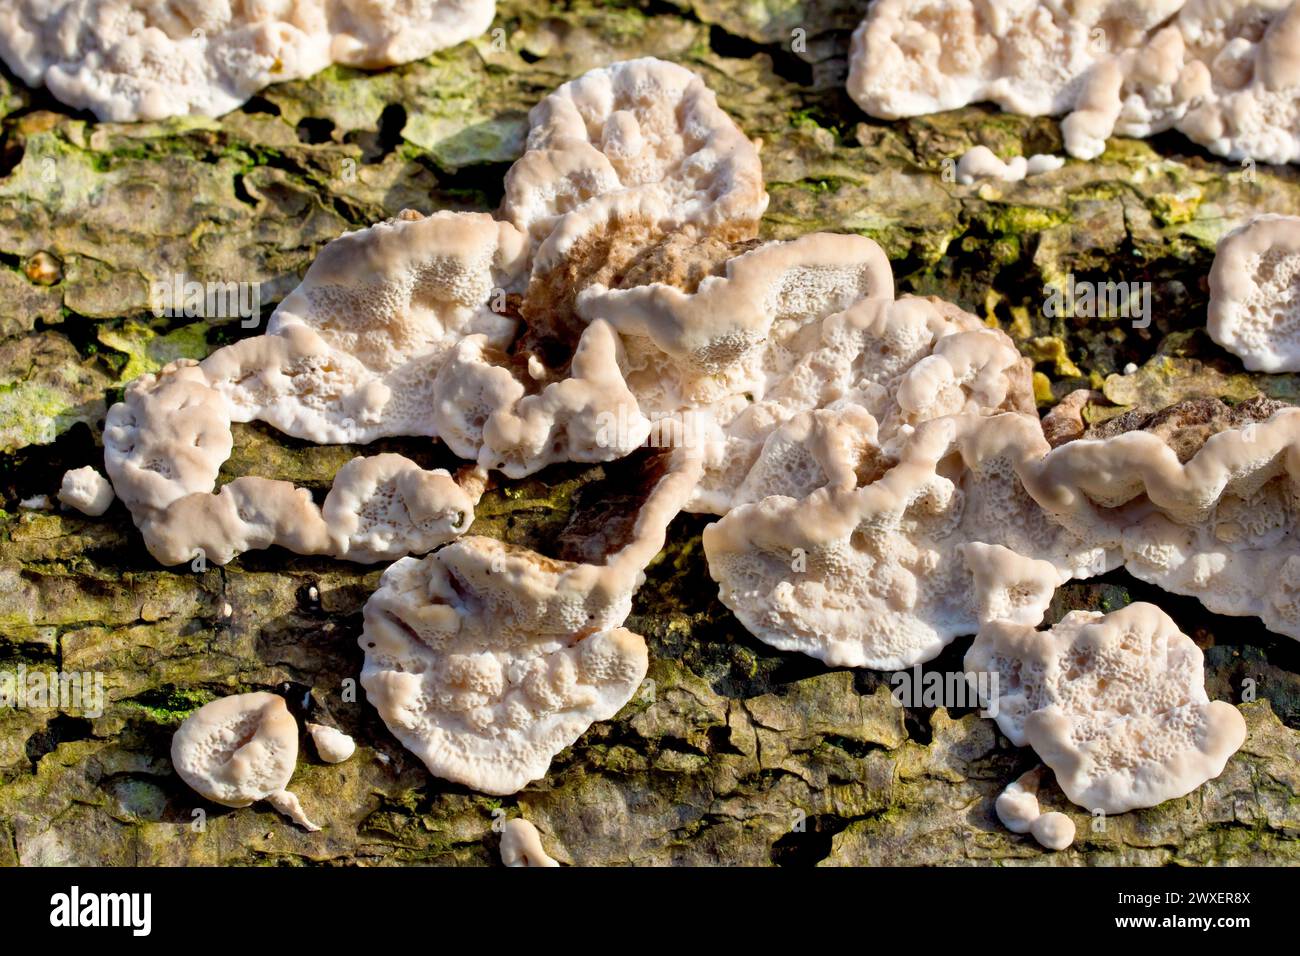 Nahaufnahme der jungen Fruchtkörper eines Pilzes, der auf einem verrottenden Stamm wächst, wahrscheinlich Stereum hirsutum, auch bekannt als Haarige Vorhangkruste. Stockfoto